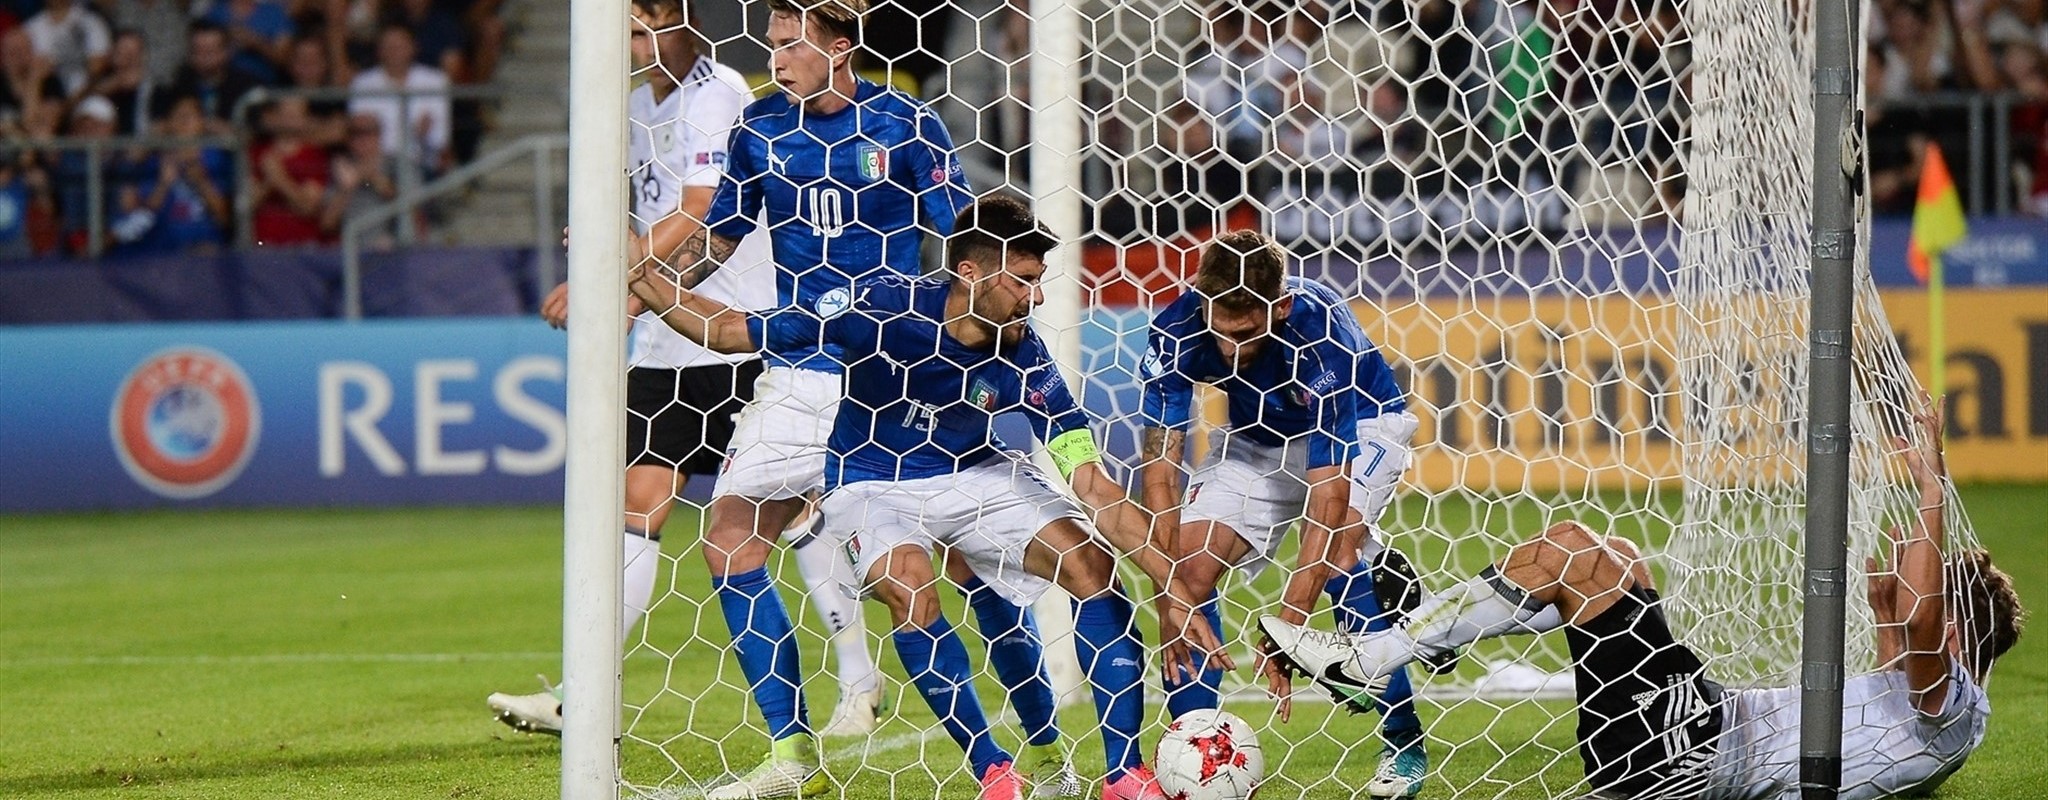 Alemania e Italia pasan a semifinales. Dinamarca rompe la ilusión checa al golearlos